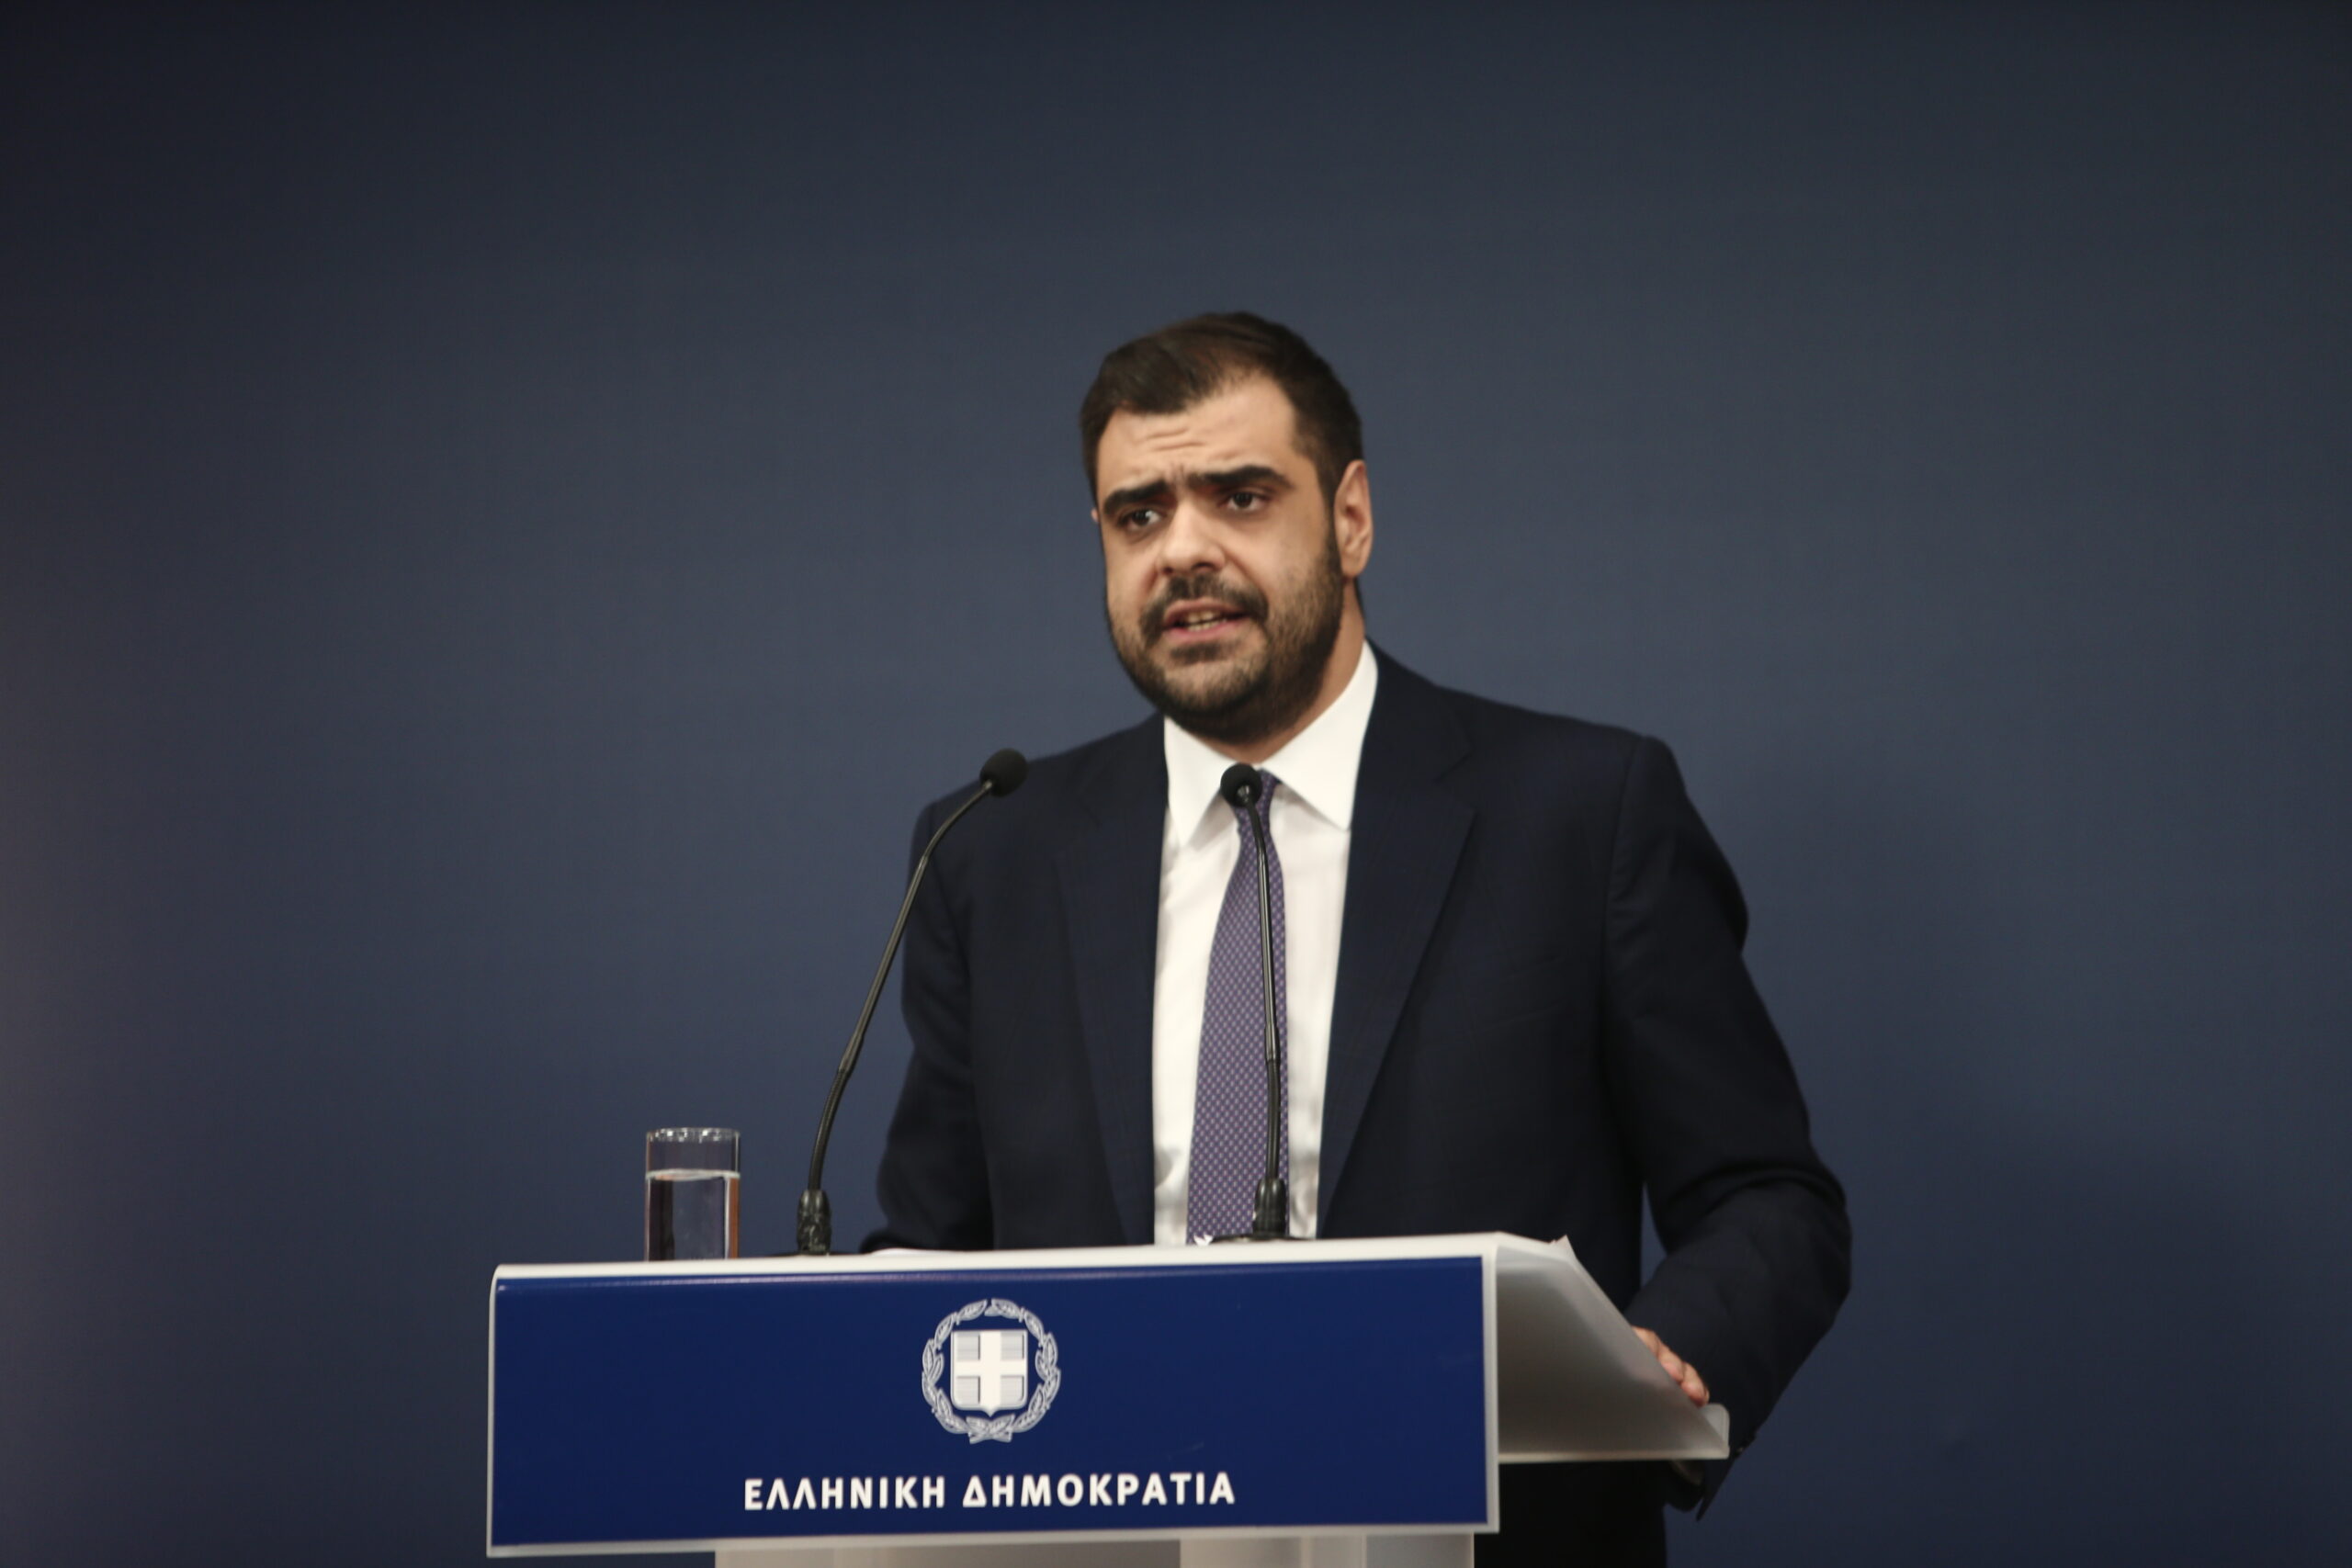 Π. Μαρινάκης: Η αναβάθμιση της Ελλάδας σε «πλήρη δημοκρατία» είναι η καλύτερη απάντηση σε όσους συκοφαντούν τη χώρα